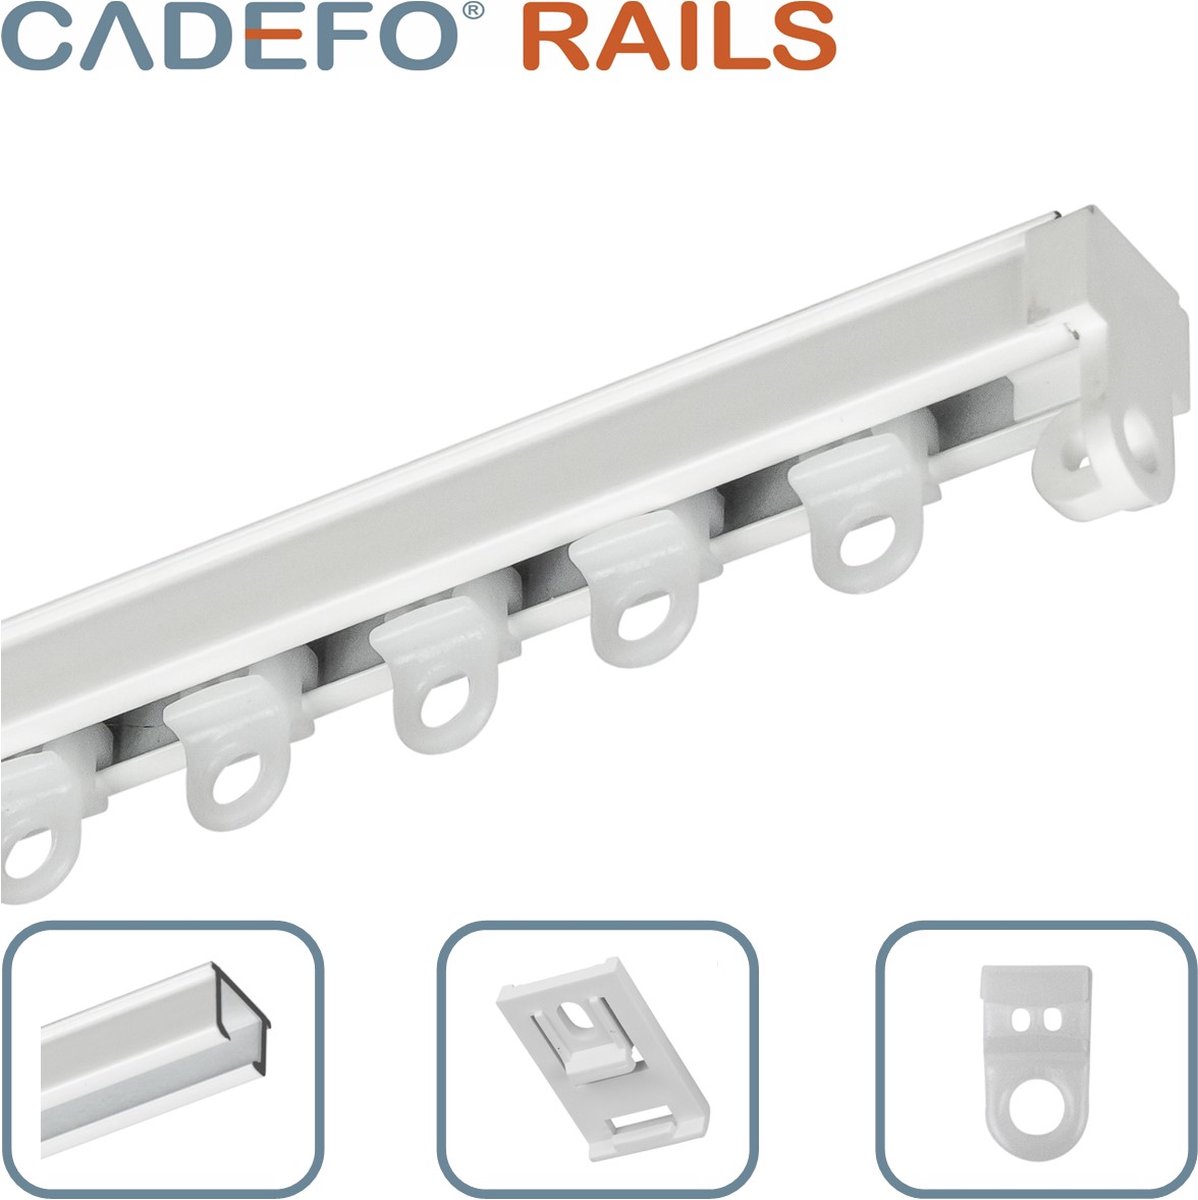 CADEFO RAILS (201 - 250 cm) Gordijnrails - Compleet op maat! - UIT 1 STUK - Leverbaar tot 6 meter - Plafondbevestiging - Lengte 213 cm